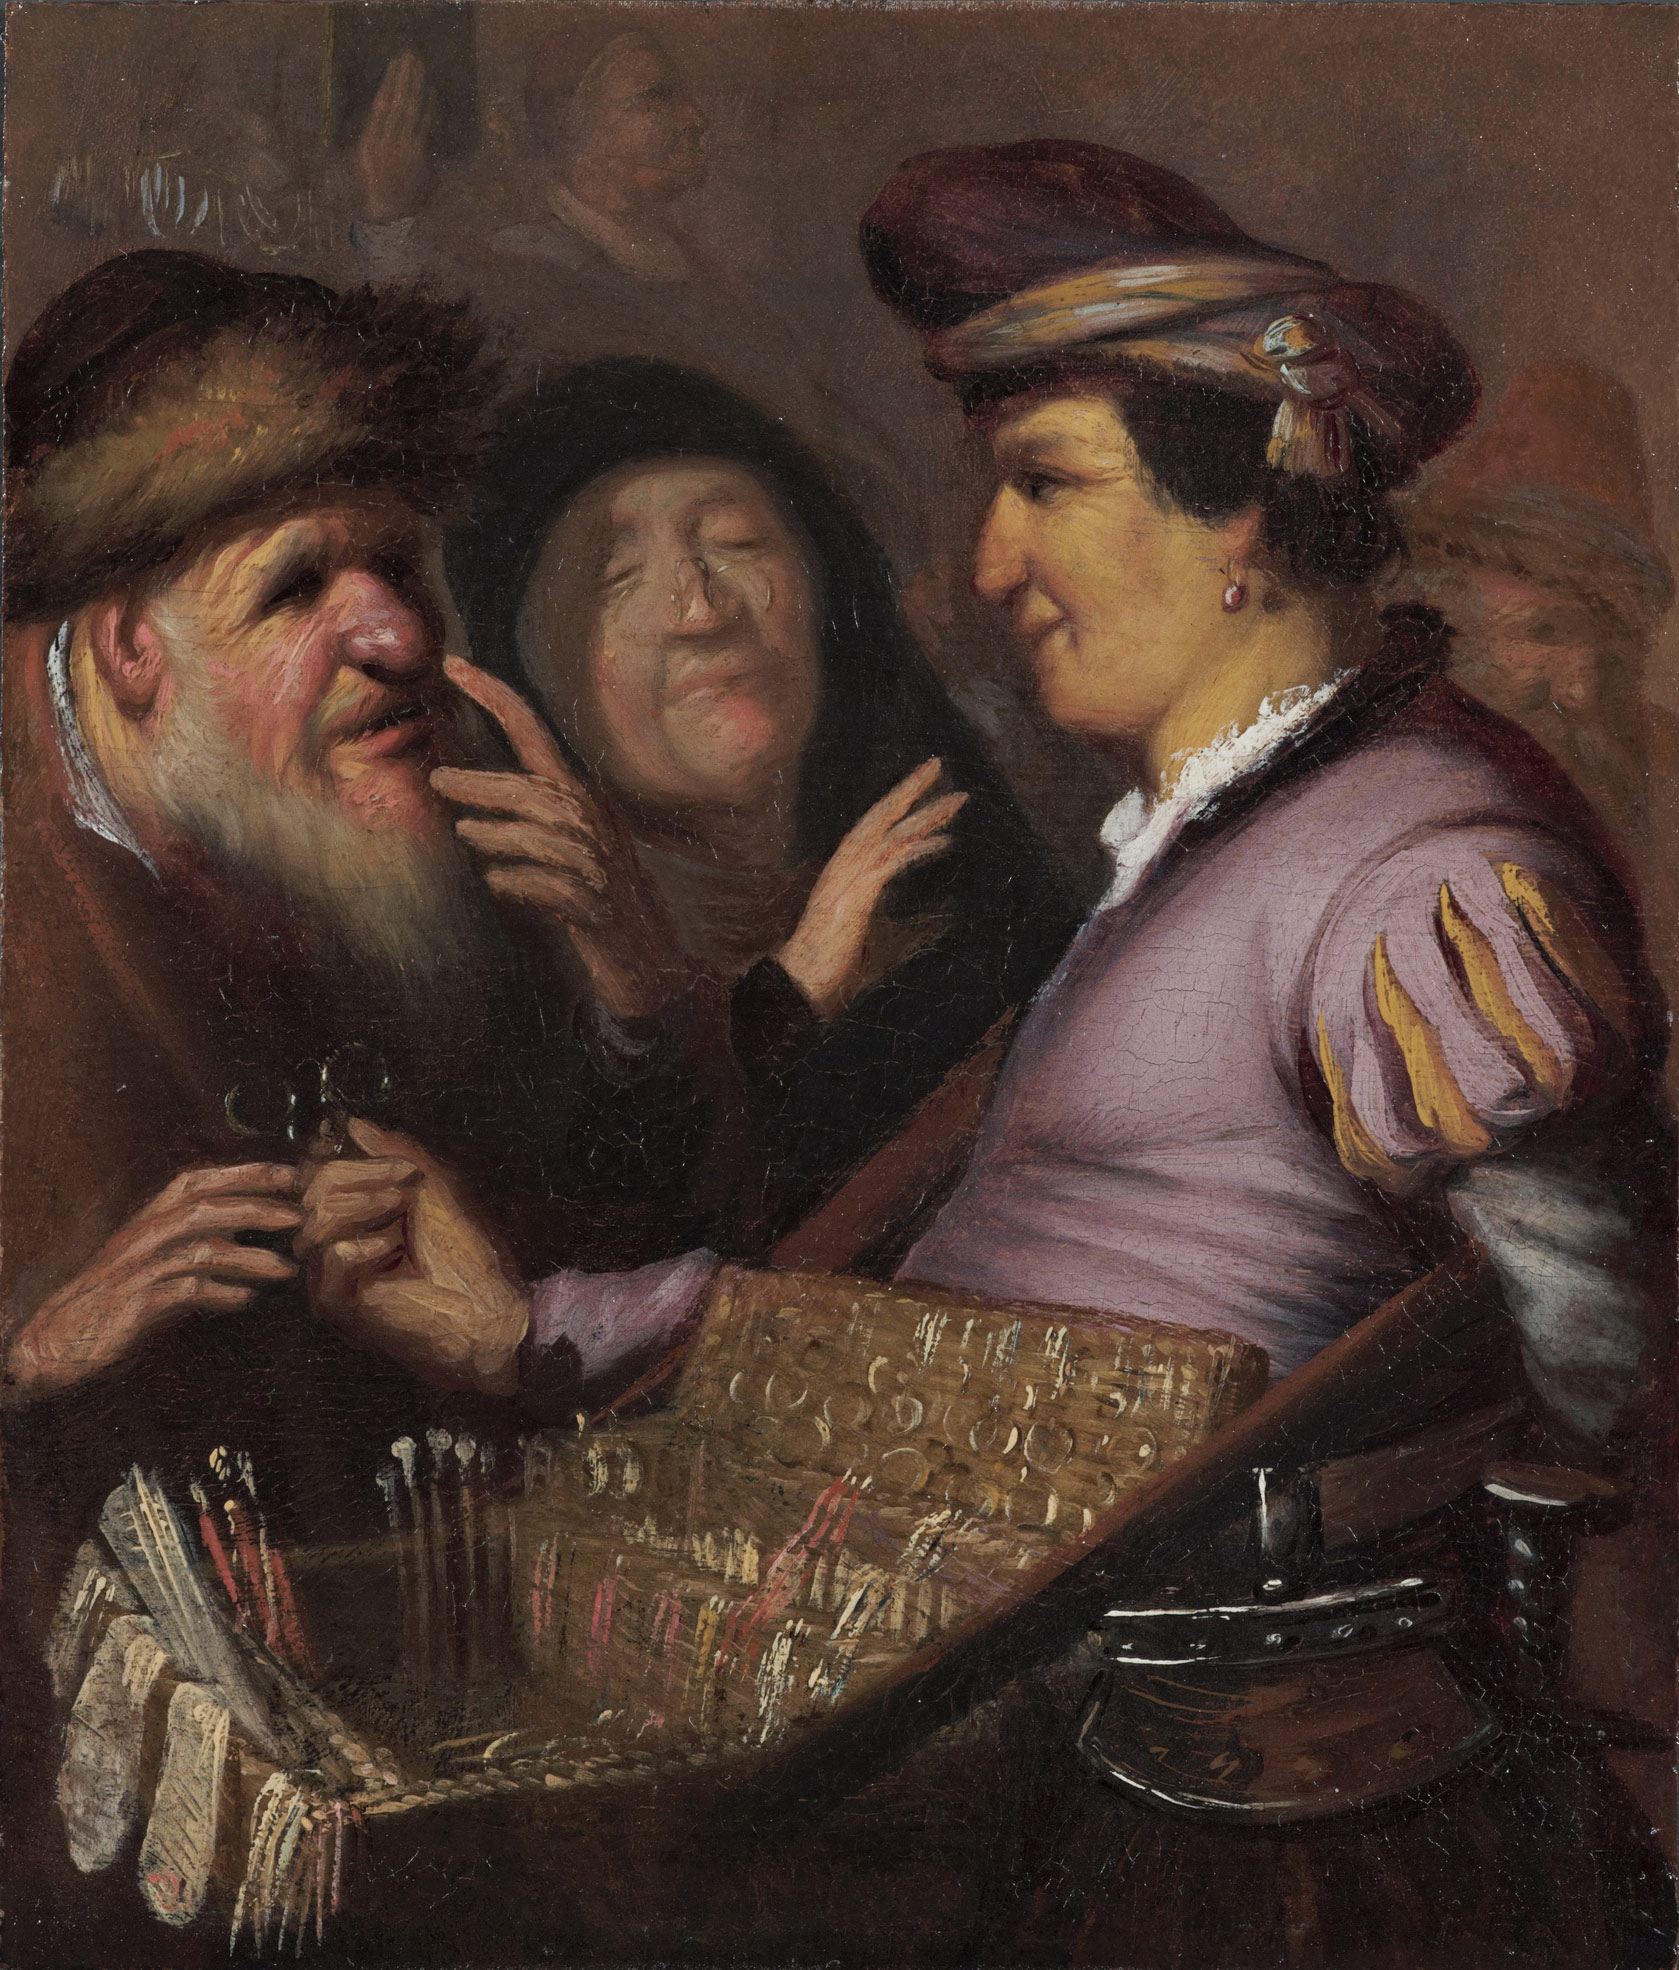 Rembrandt, Venditrice di occhiali (1624 circa; olio su tavola, 21 x 18 cm; Leiden, Museum de Lakenhal)
